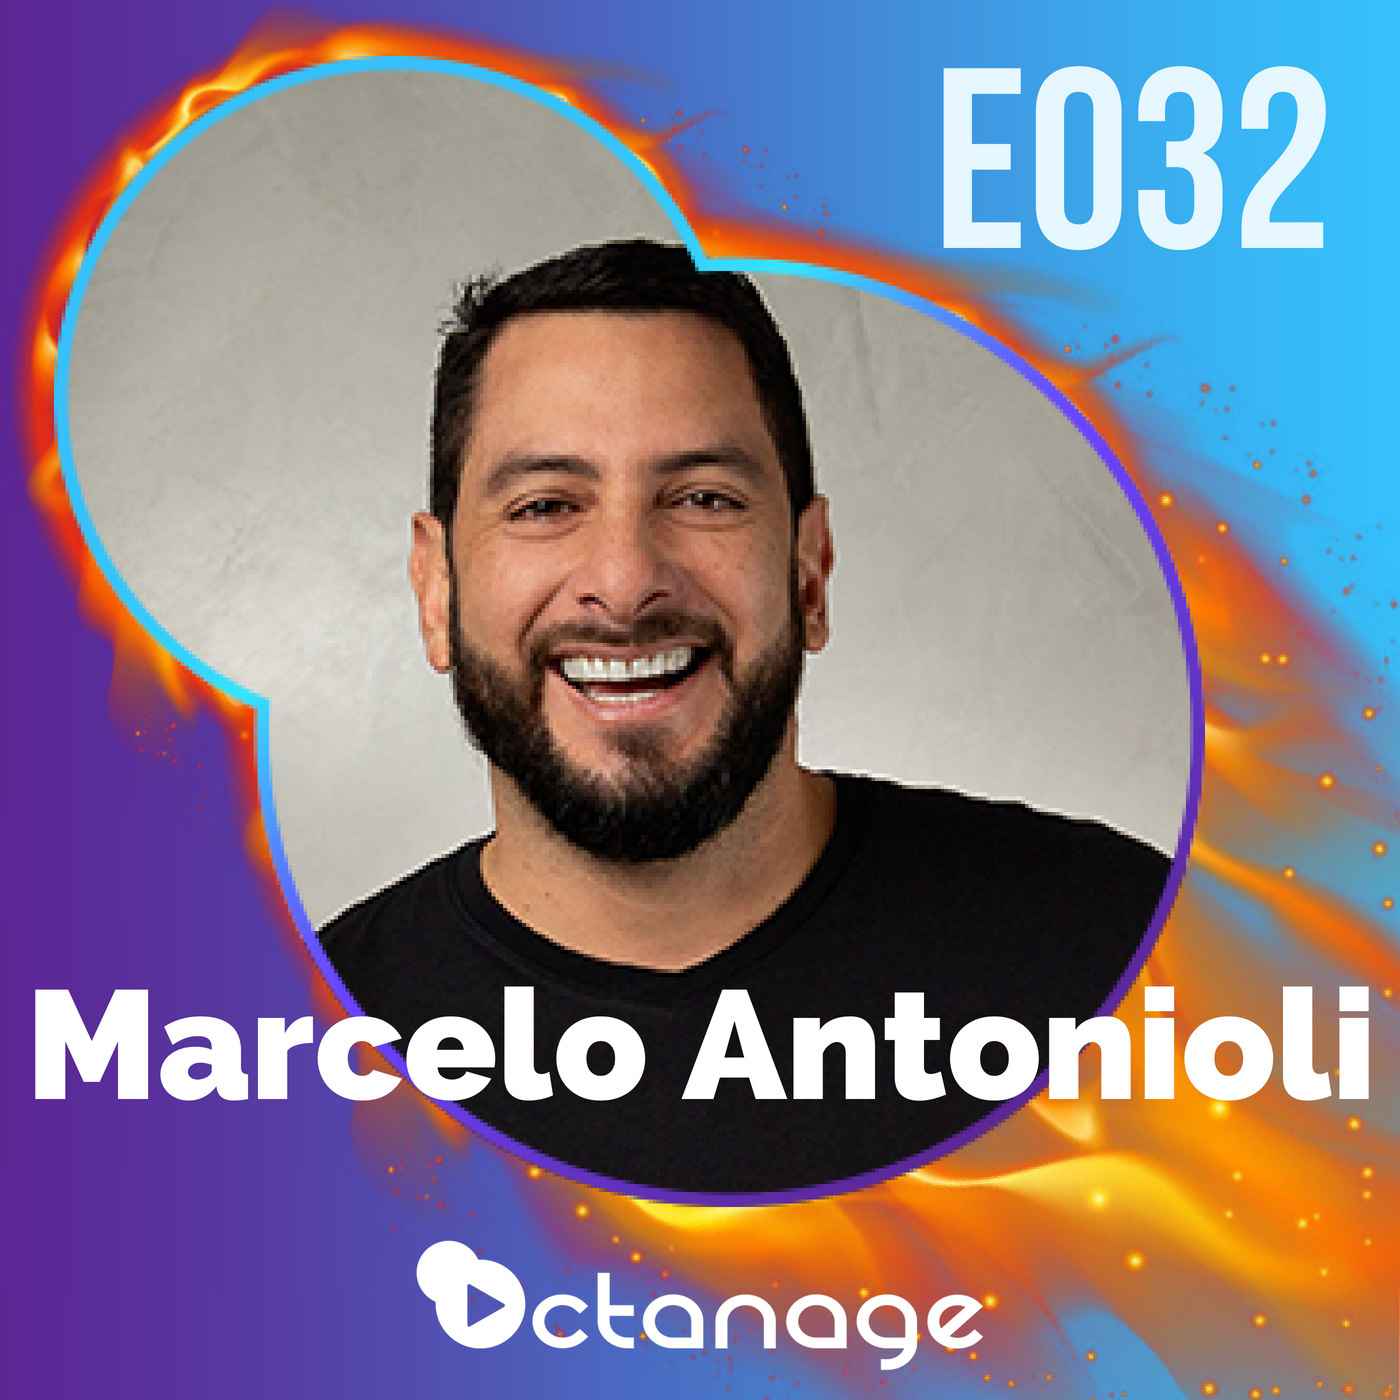 Construindo sua Marca, Audiência e Autoridade nas Redes Sociais com Marcelo Antonioli | DigPack E032